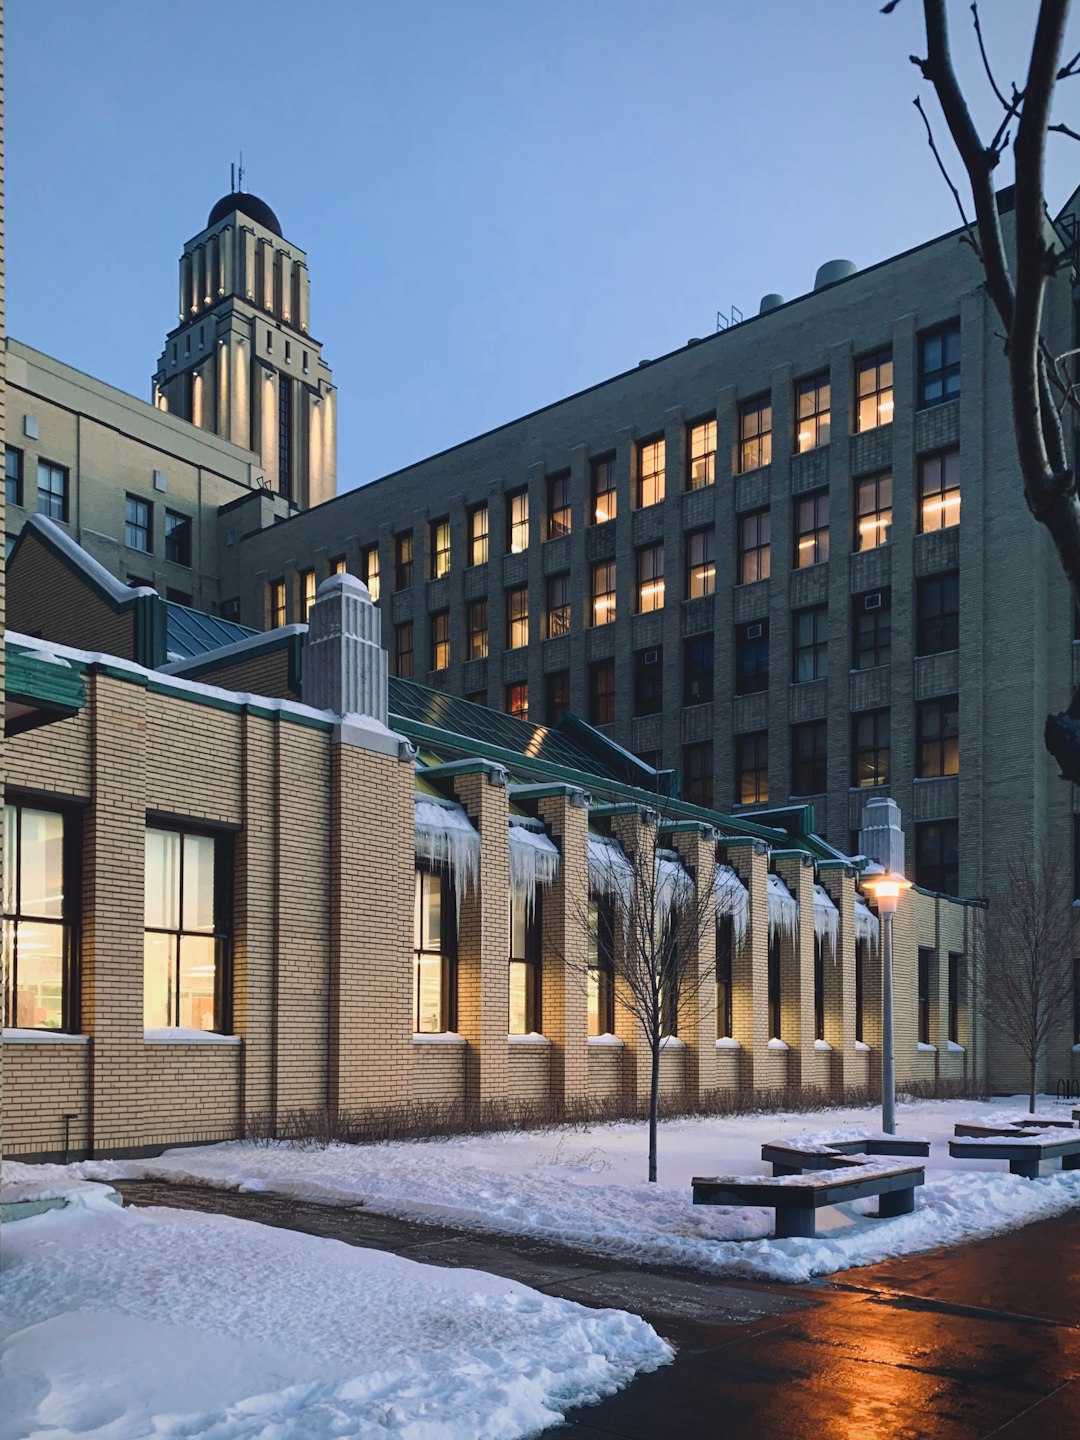 Travel Tips and Stories of Université de Montréal in Canada